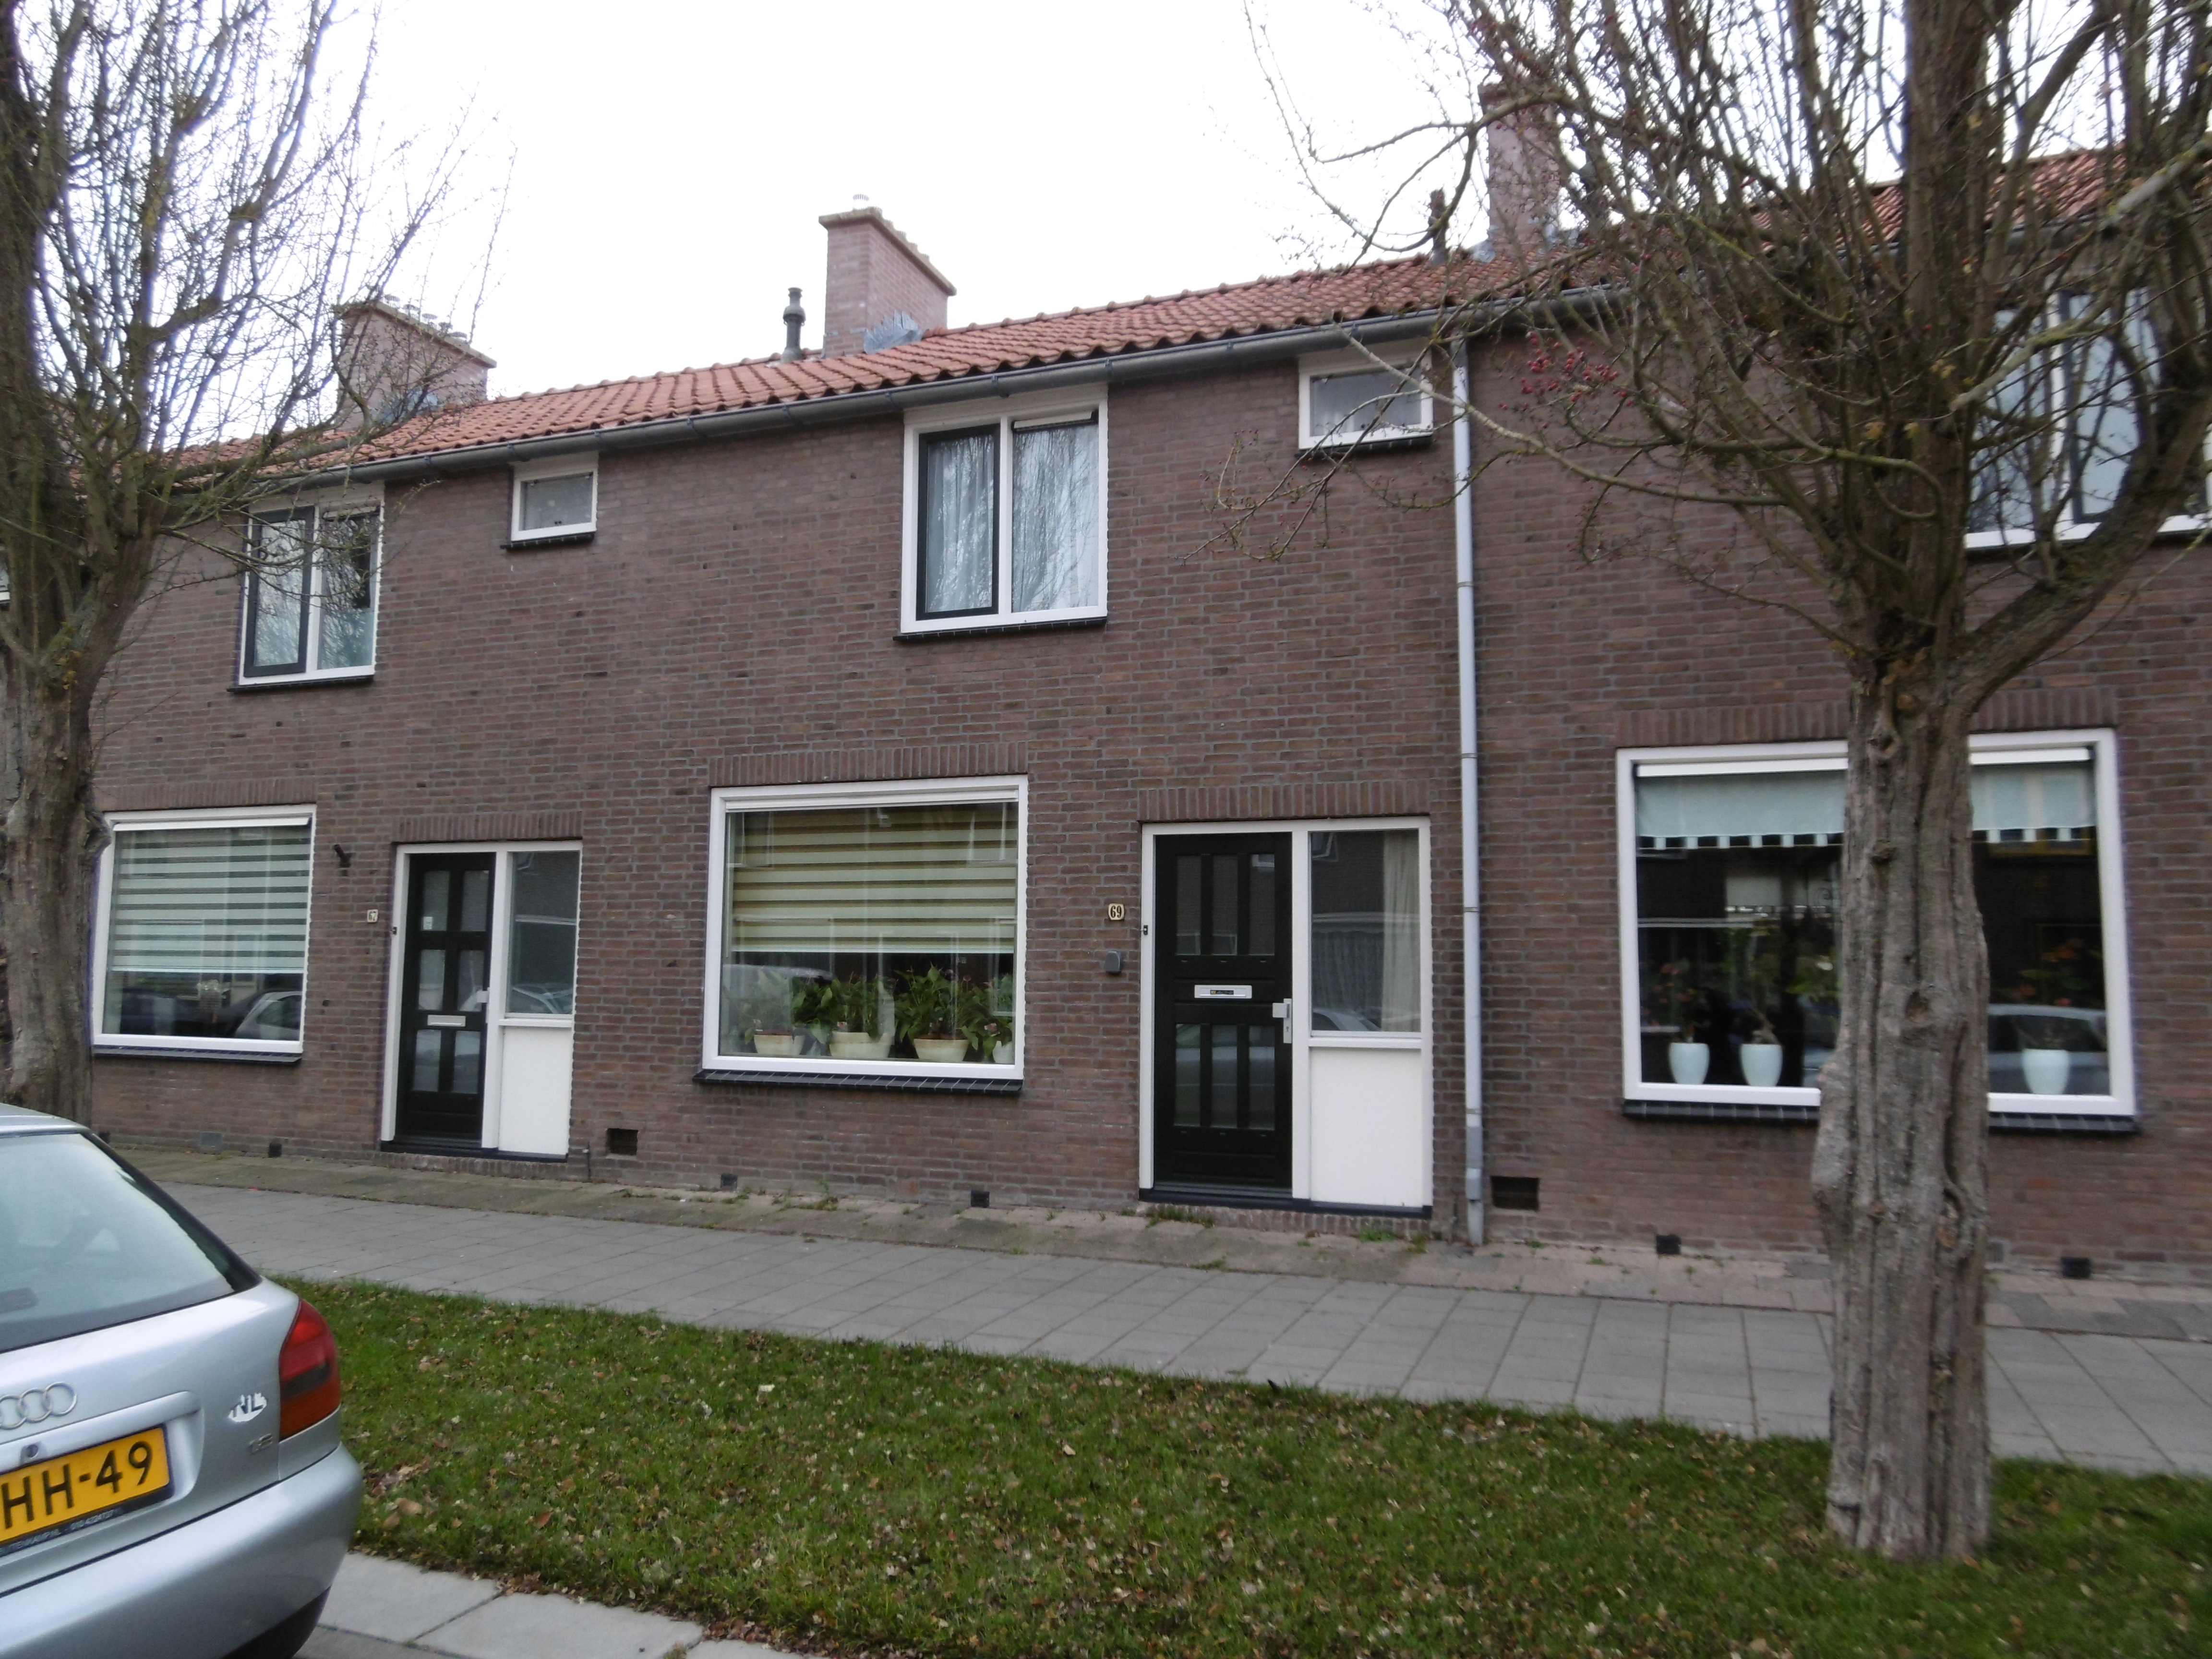 Faddegonstraat 69, 8302 GJ Emmeloord, Nederland